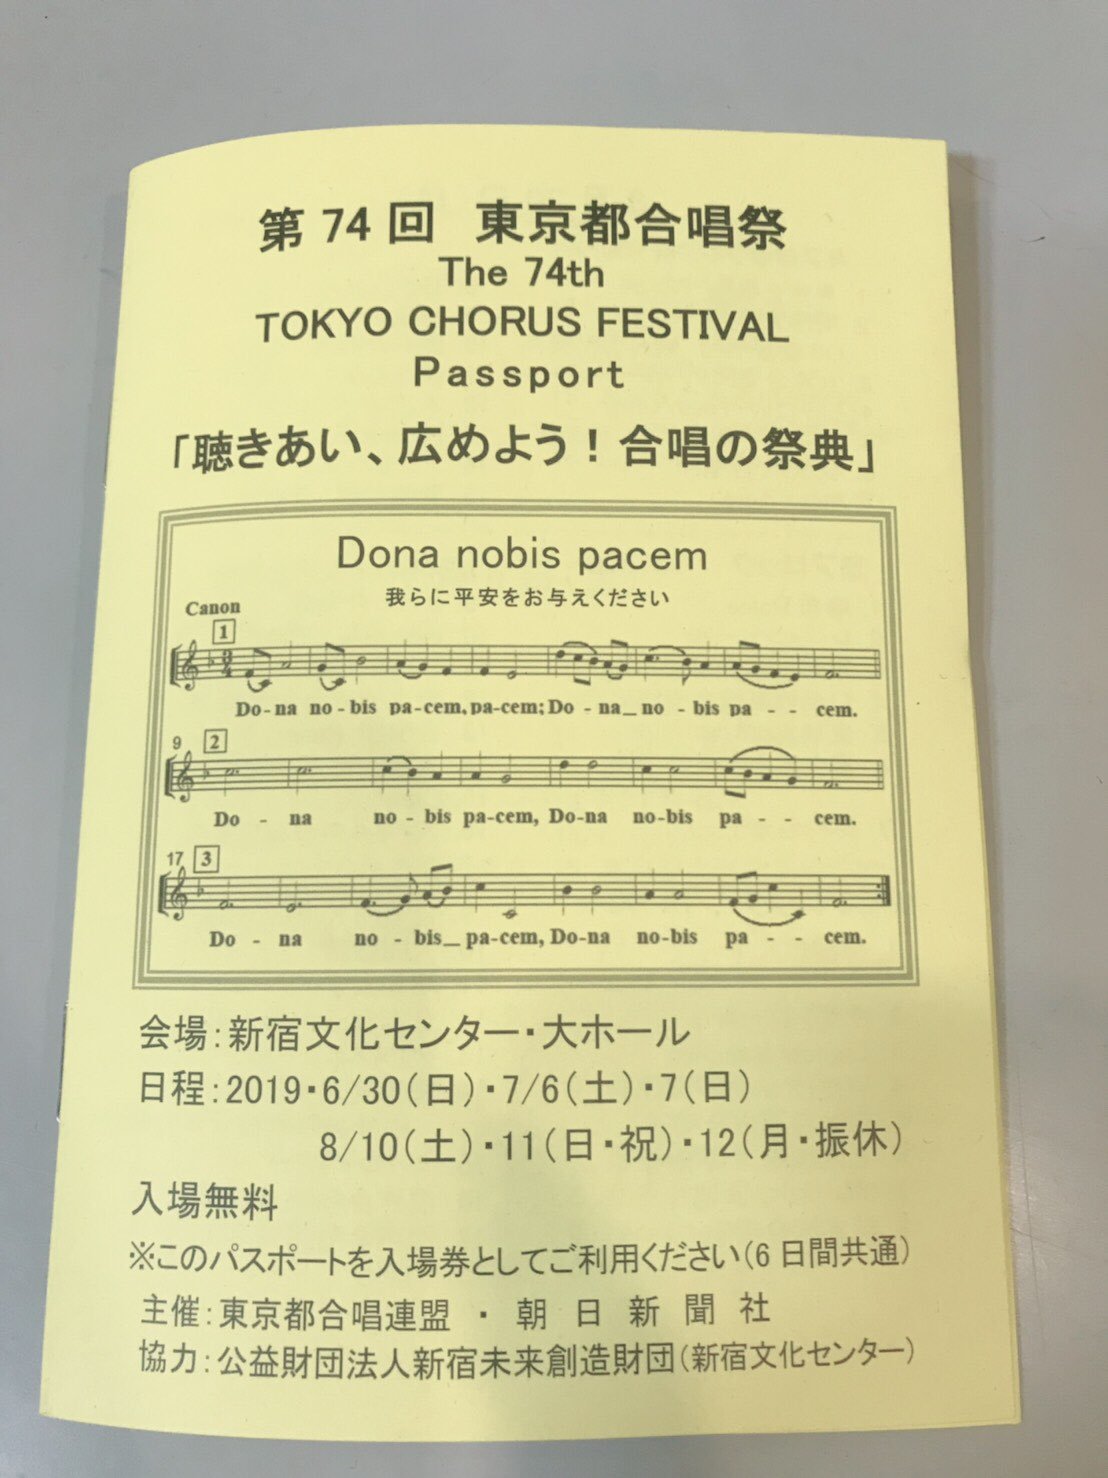 大会 コンクール 県 全日本 岩手 2019 合唱 全日本合唱コンクール 支部大会のページ